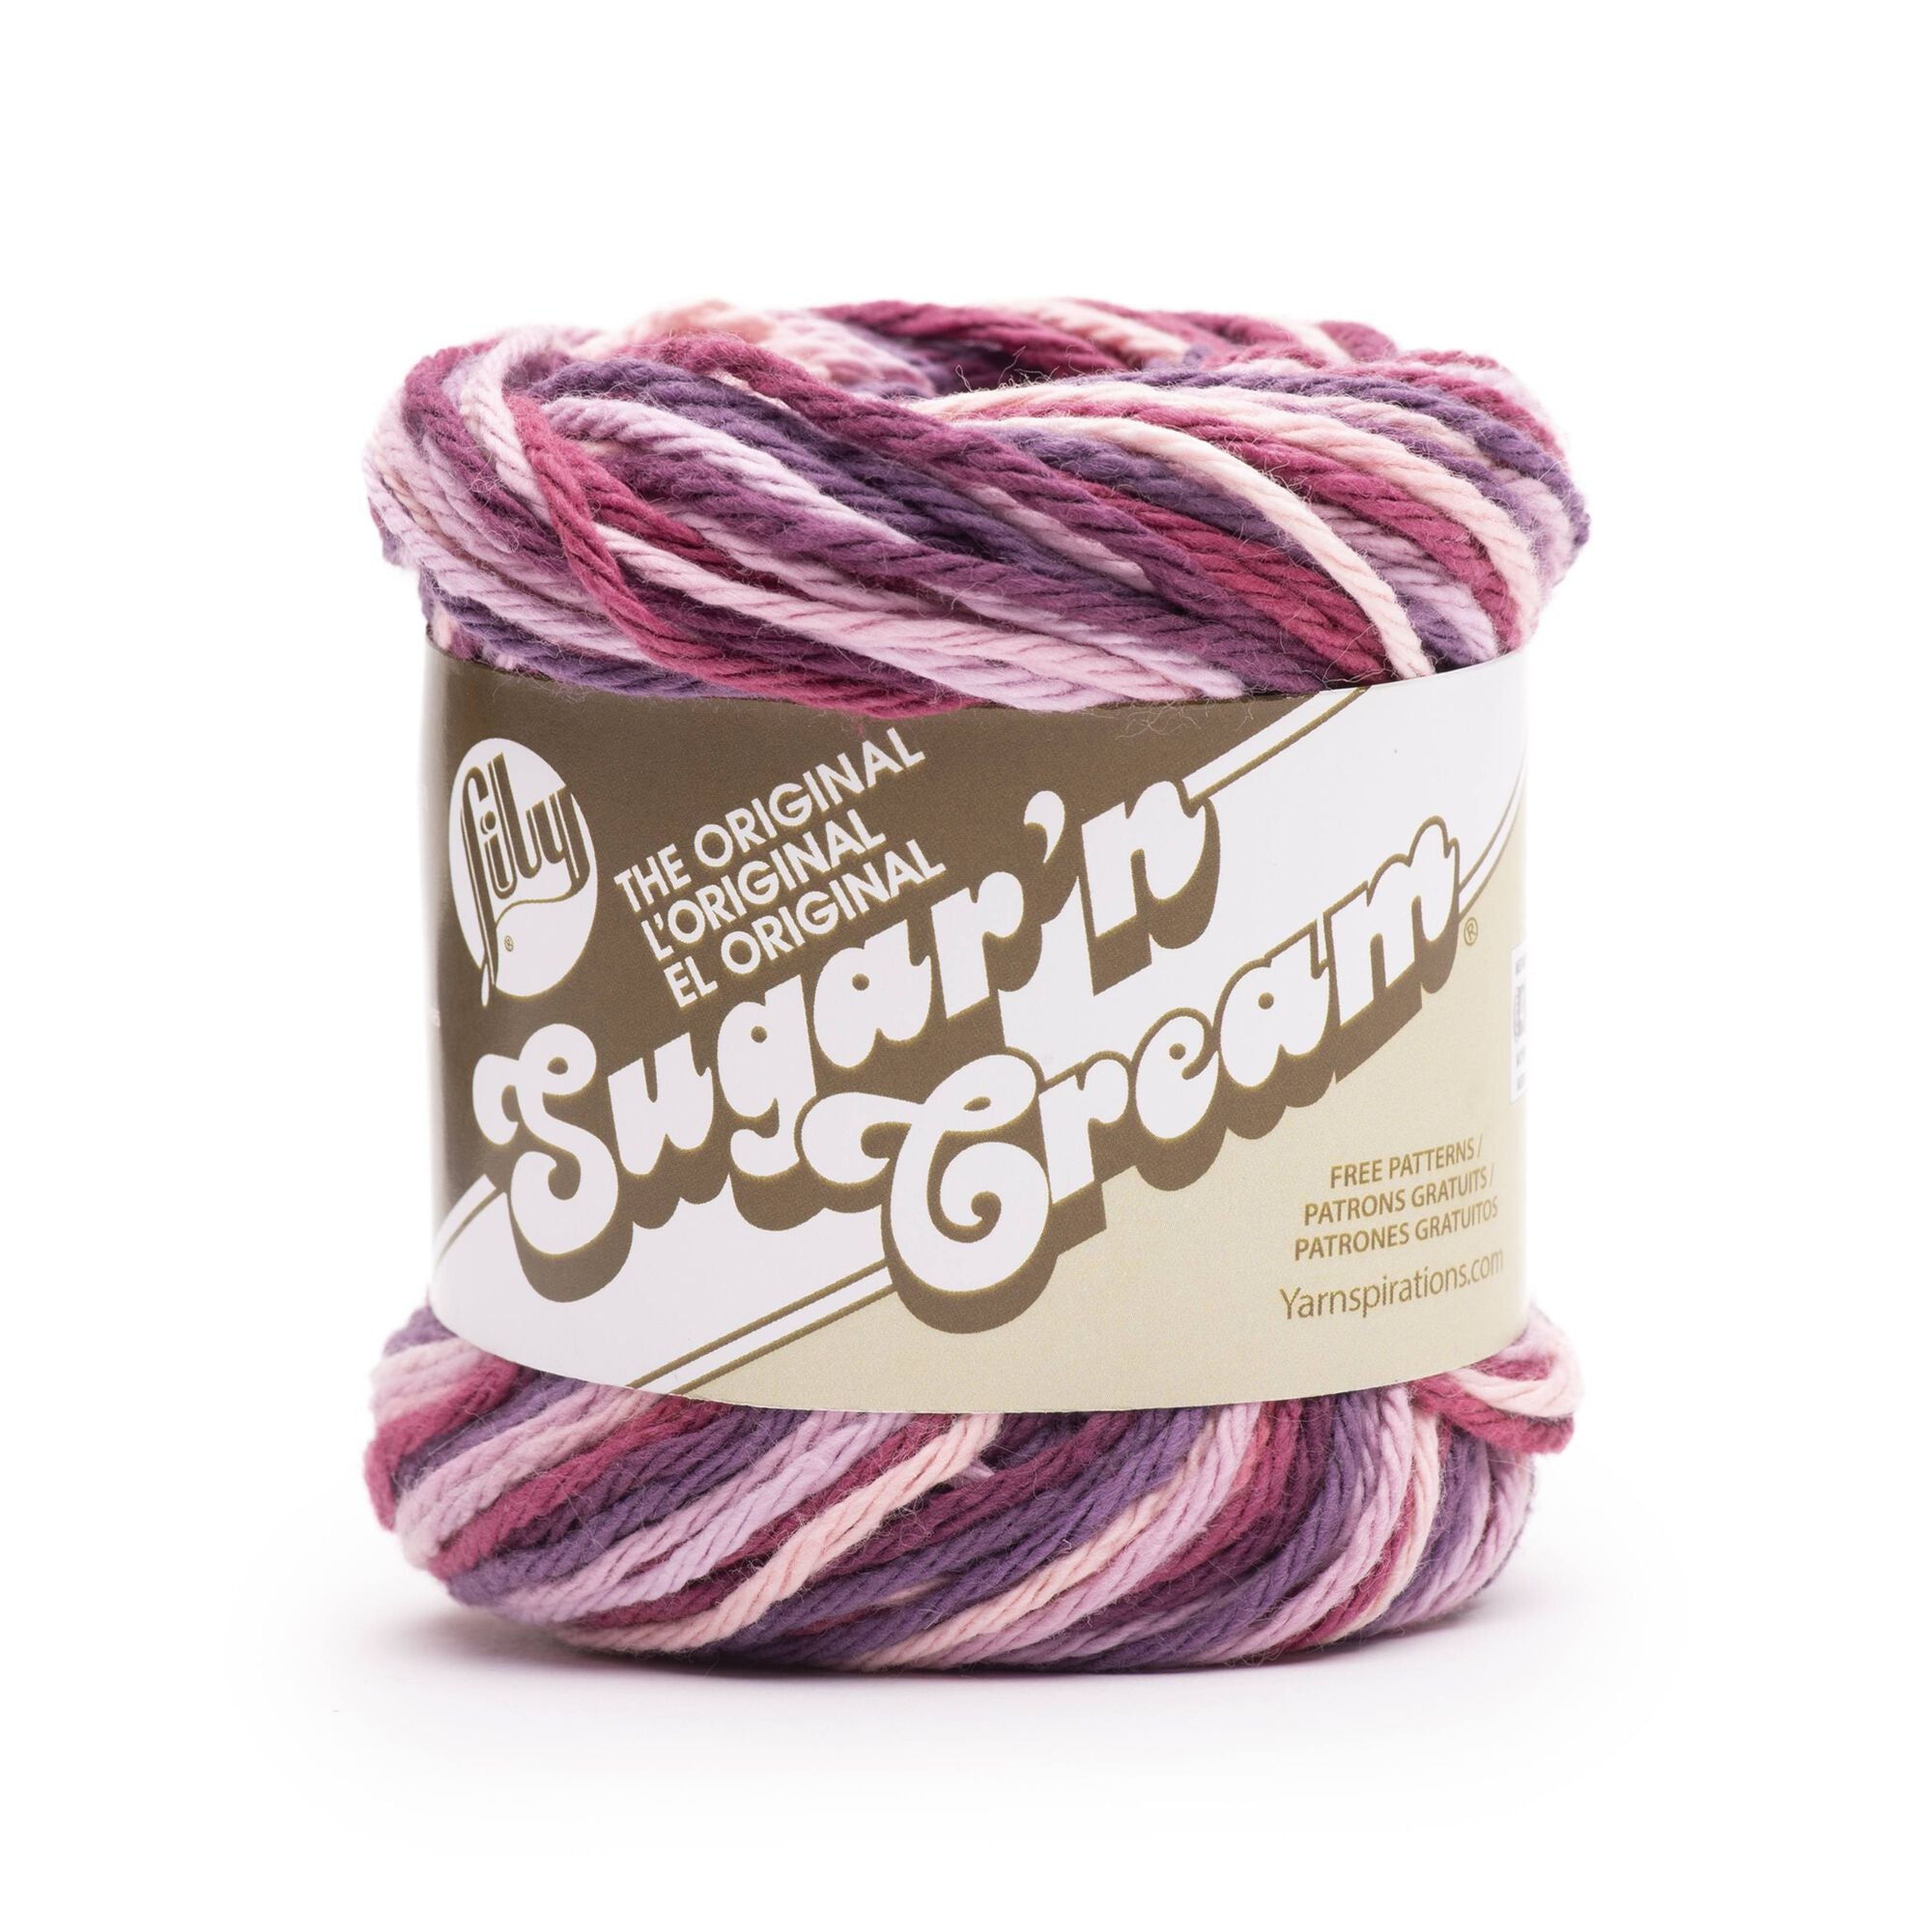 Lily Sugar 'n Cream Yarn Solids (Seabreeze)